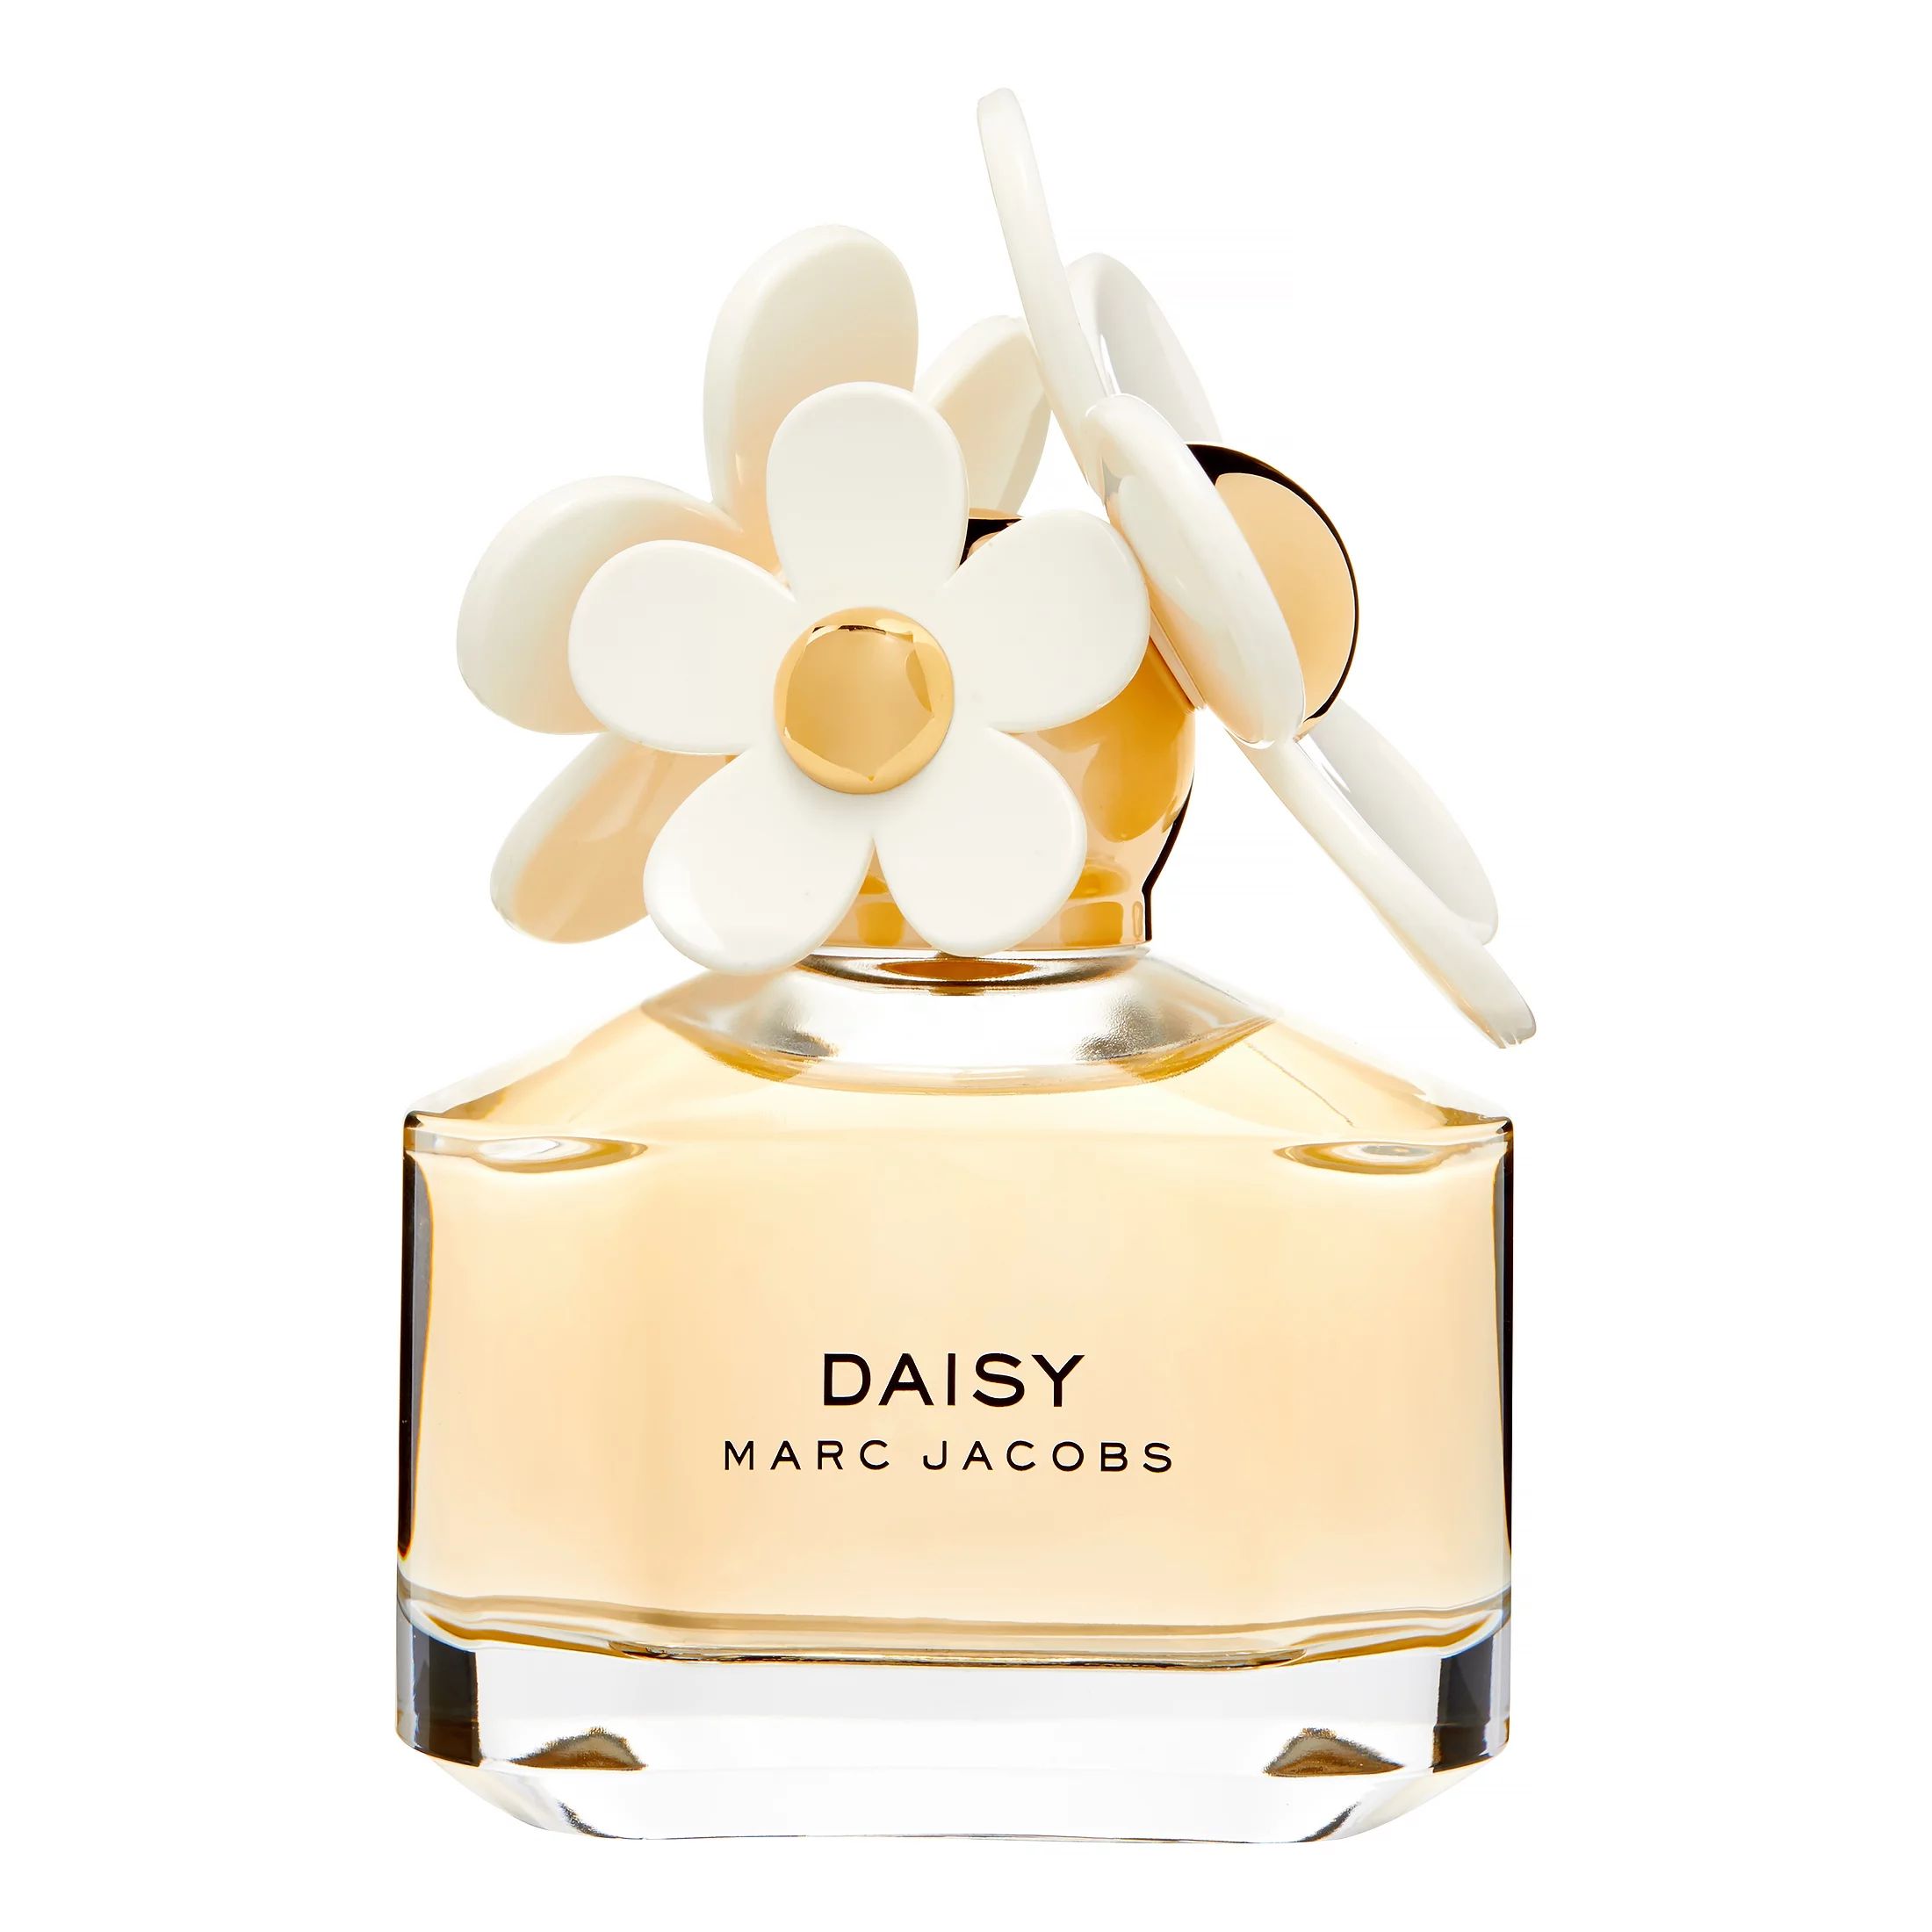 Marc Jacobs Daisy Eau De Toilette, Perfume for Women, 1.7 Oz | Walmart (US)